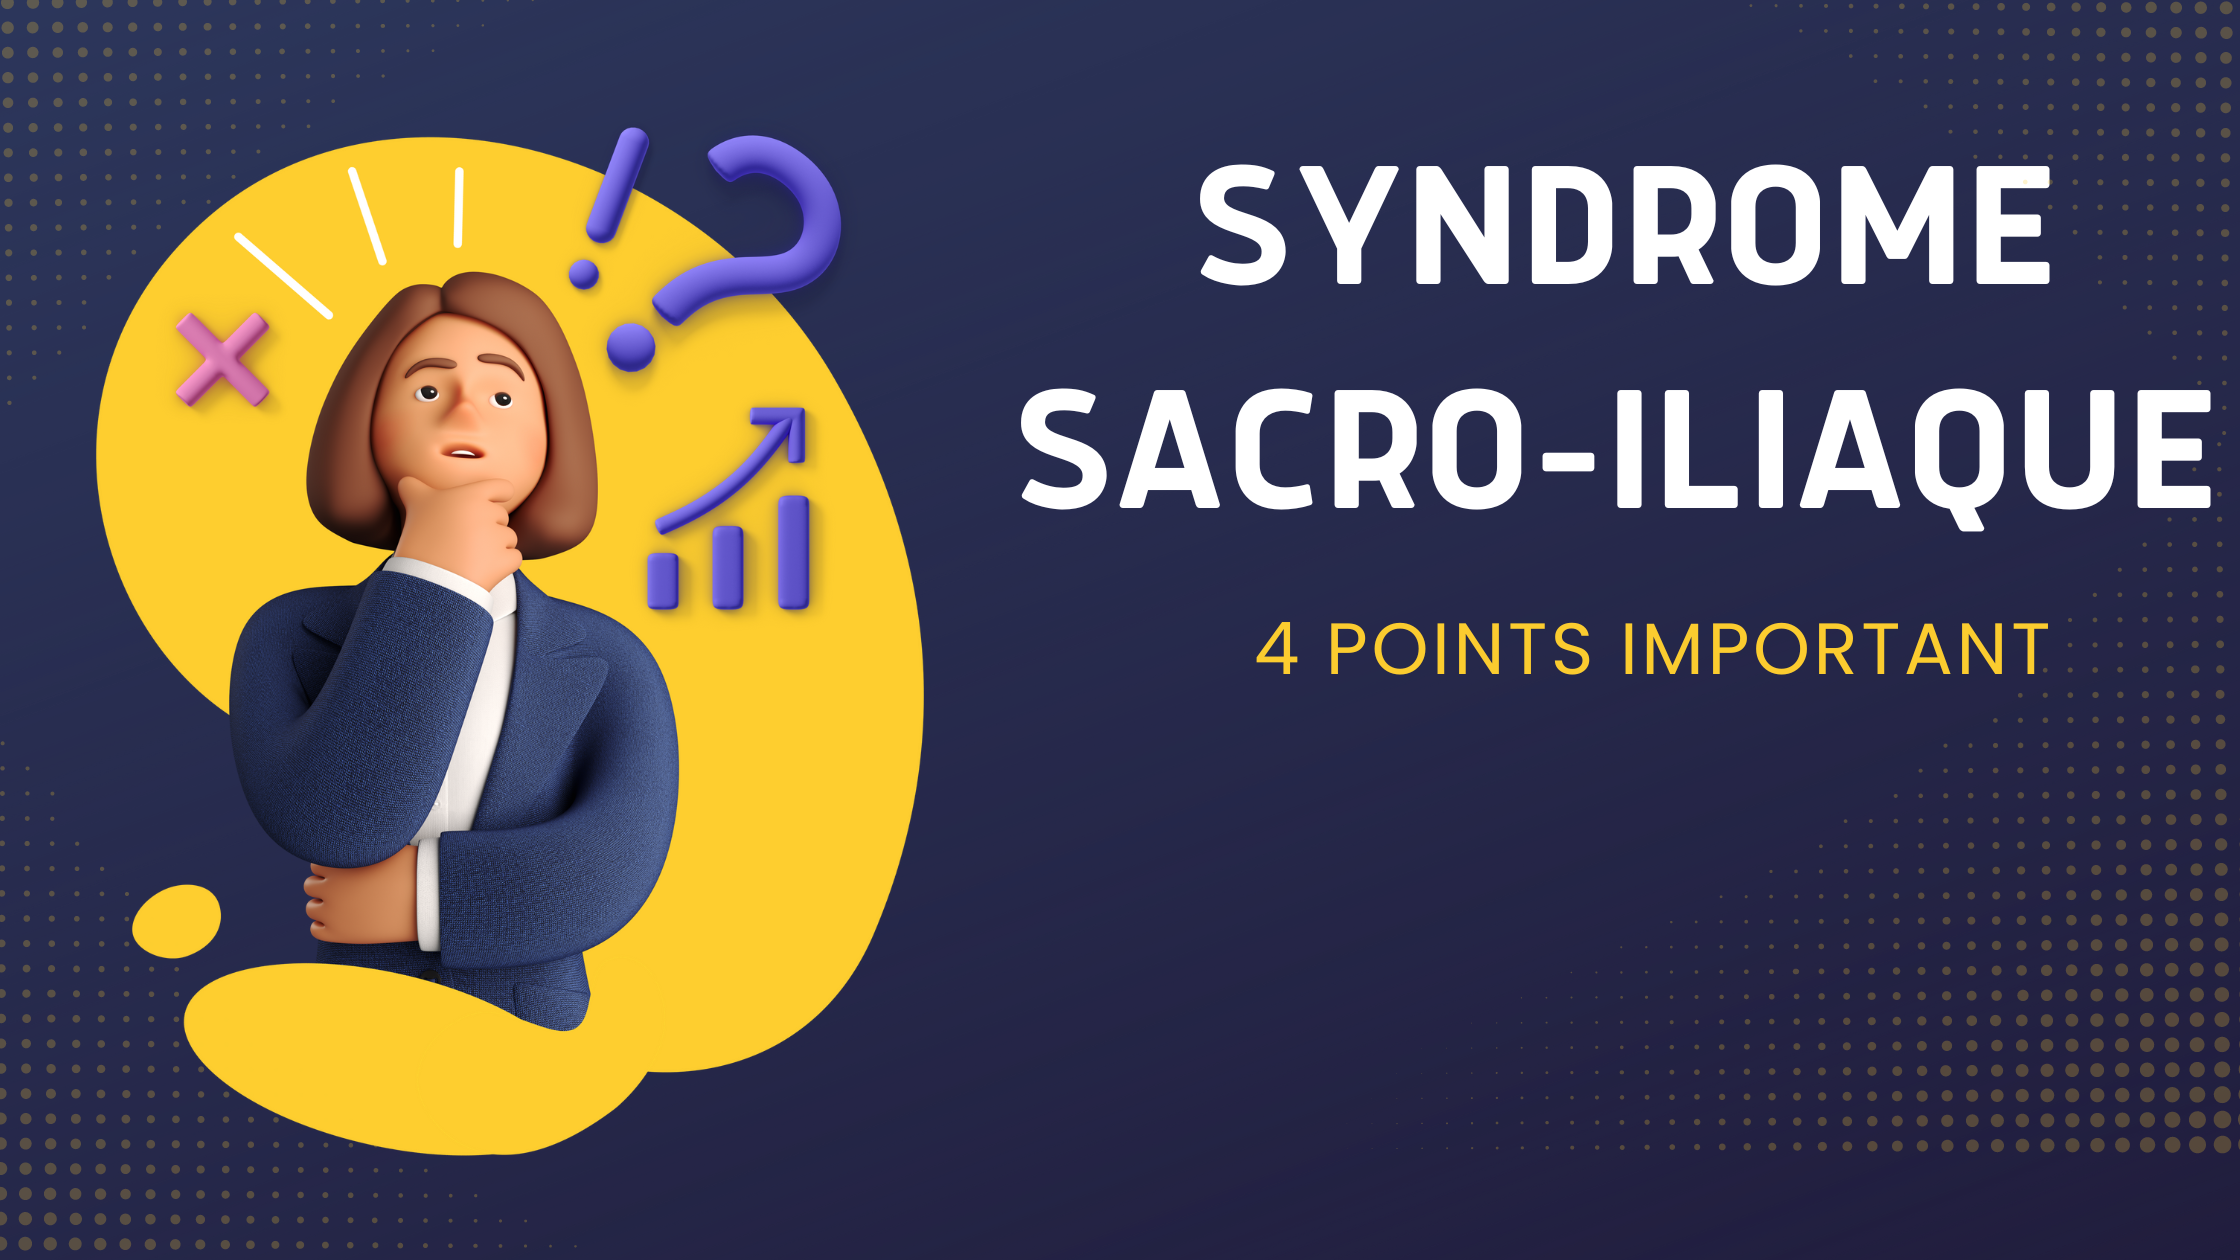 Syndrome Sacro-iliaque | 4 Points Important